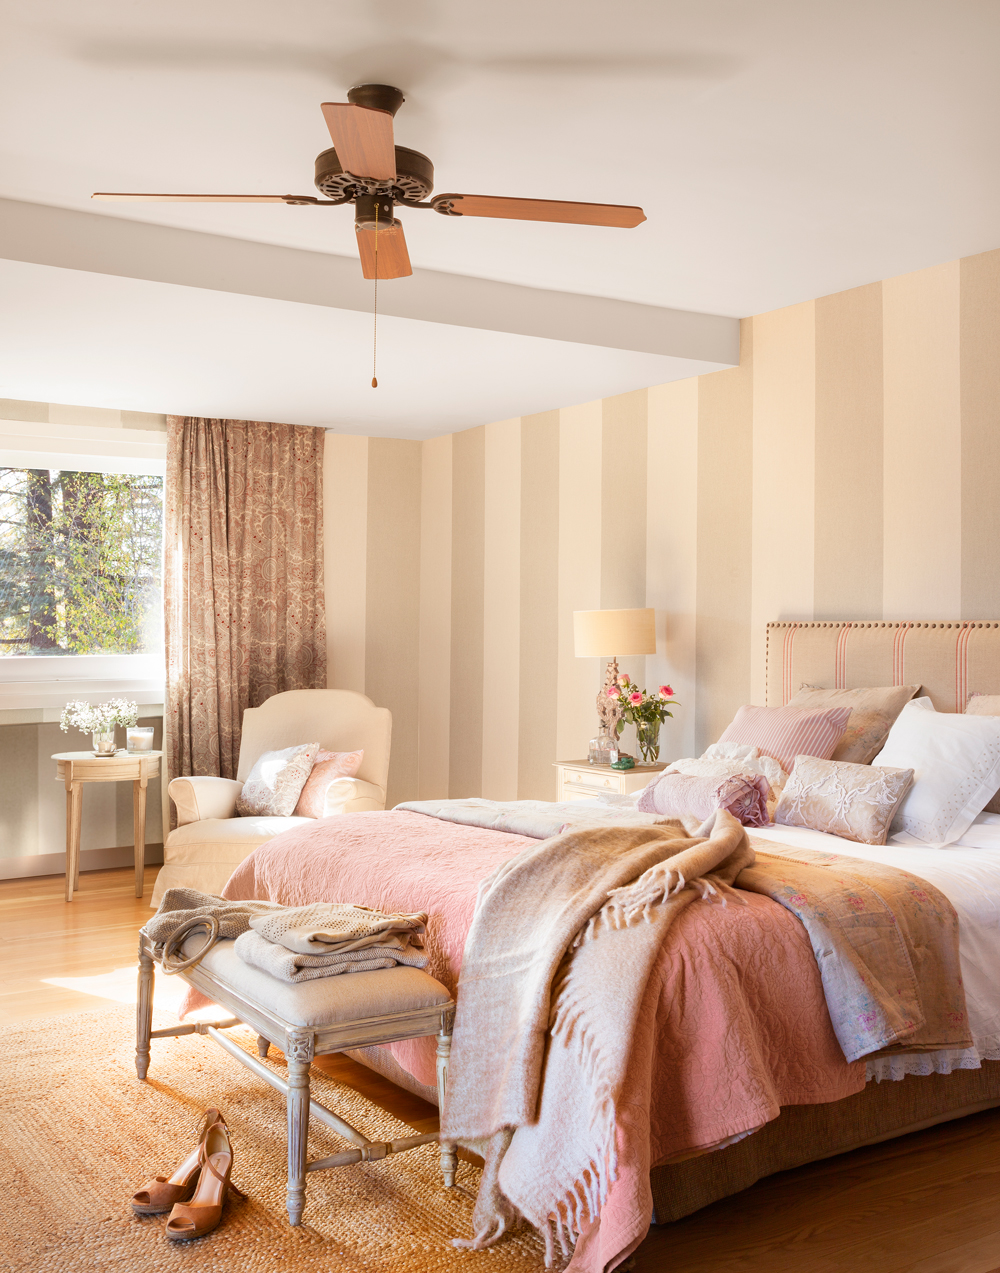 Dormitorio con paredes pintadas a rayas verticales